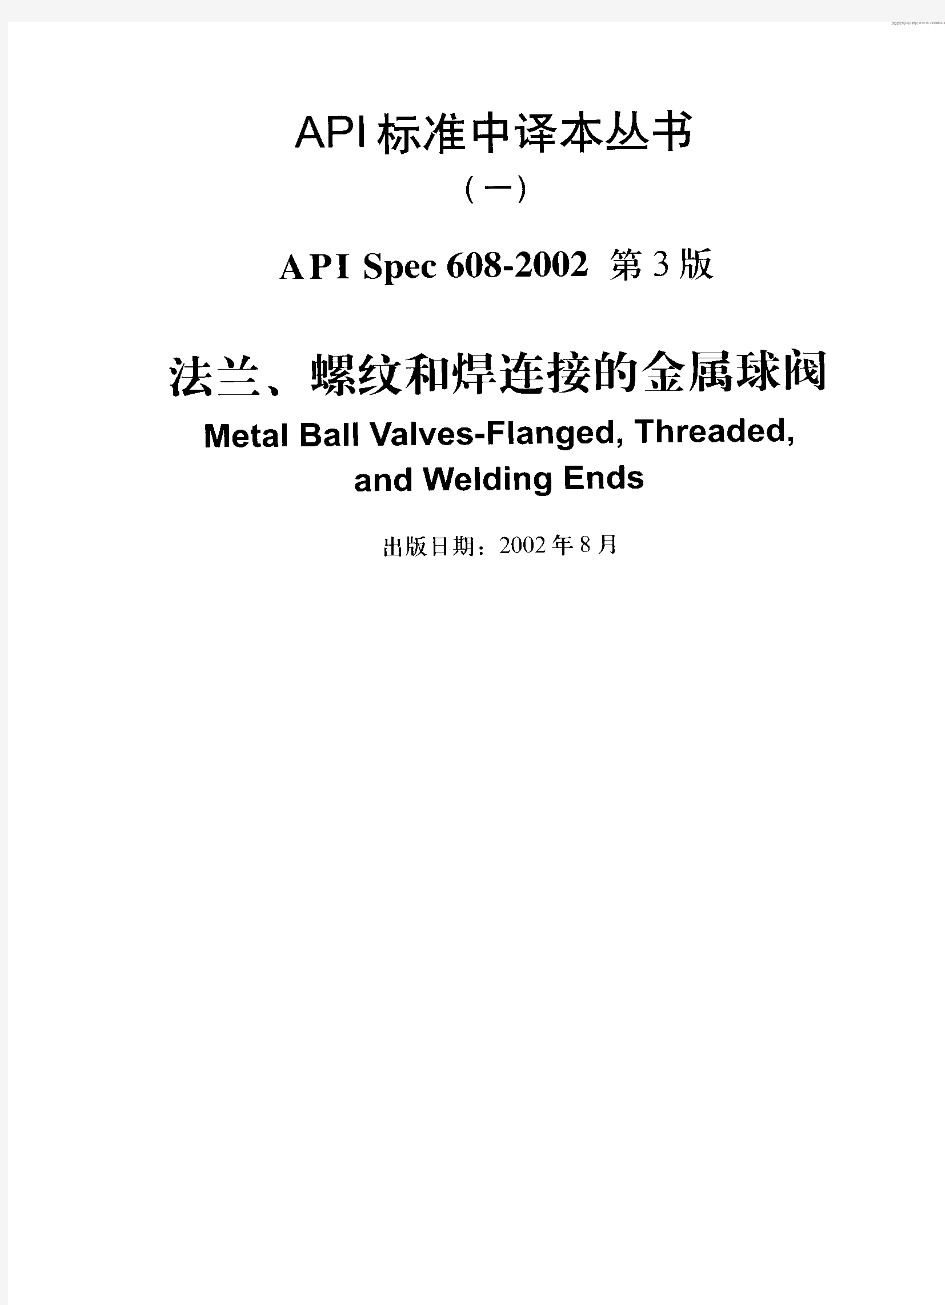 API 608-2002 中文版 法兰、螺纹和焊连接的金属球阀